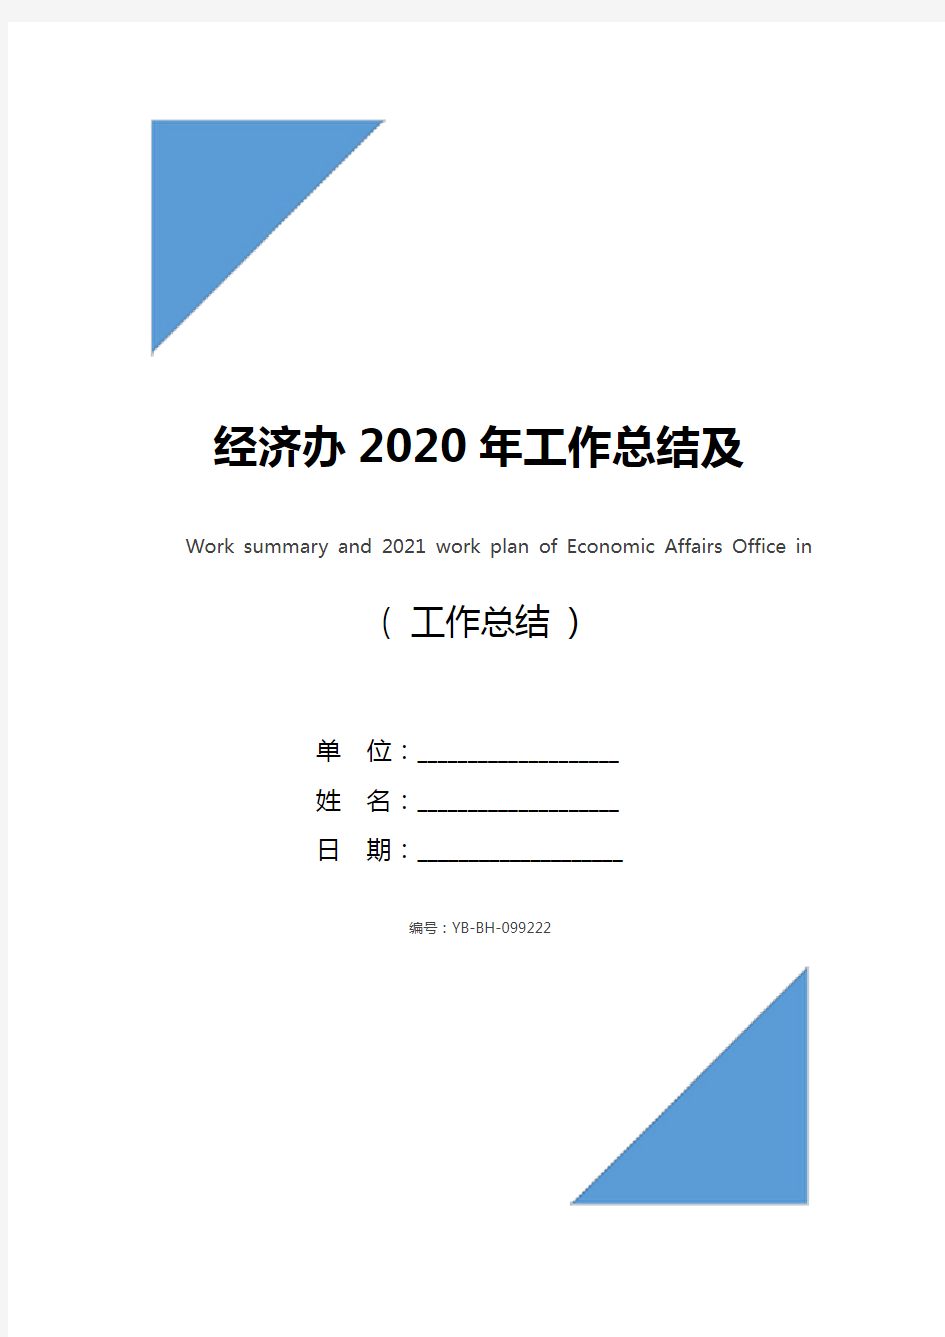 经济办2020年工作总结及2021年工作计划